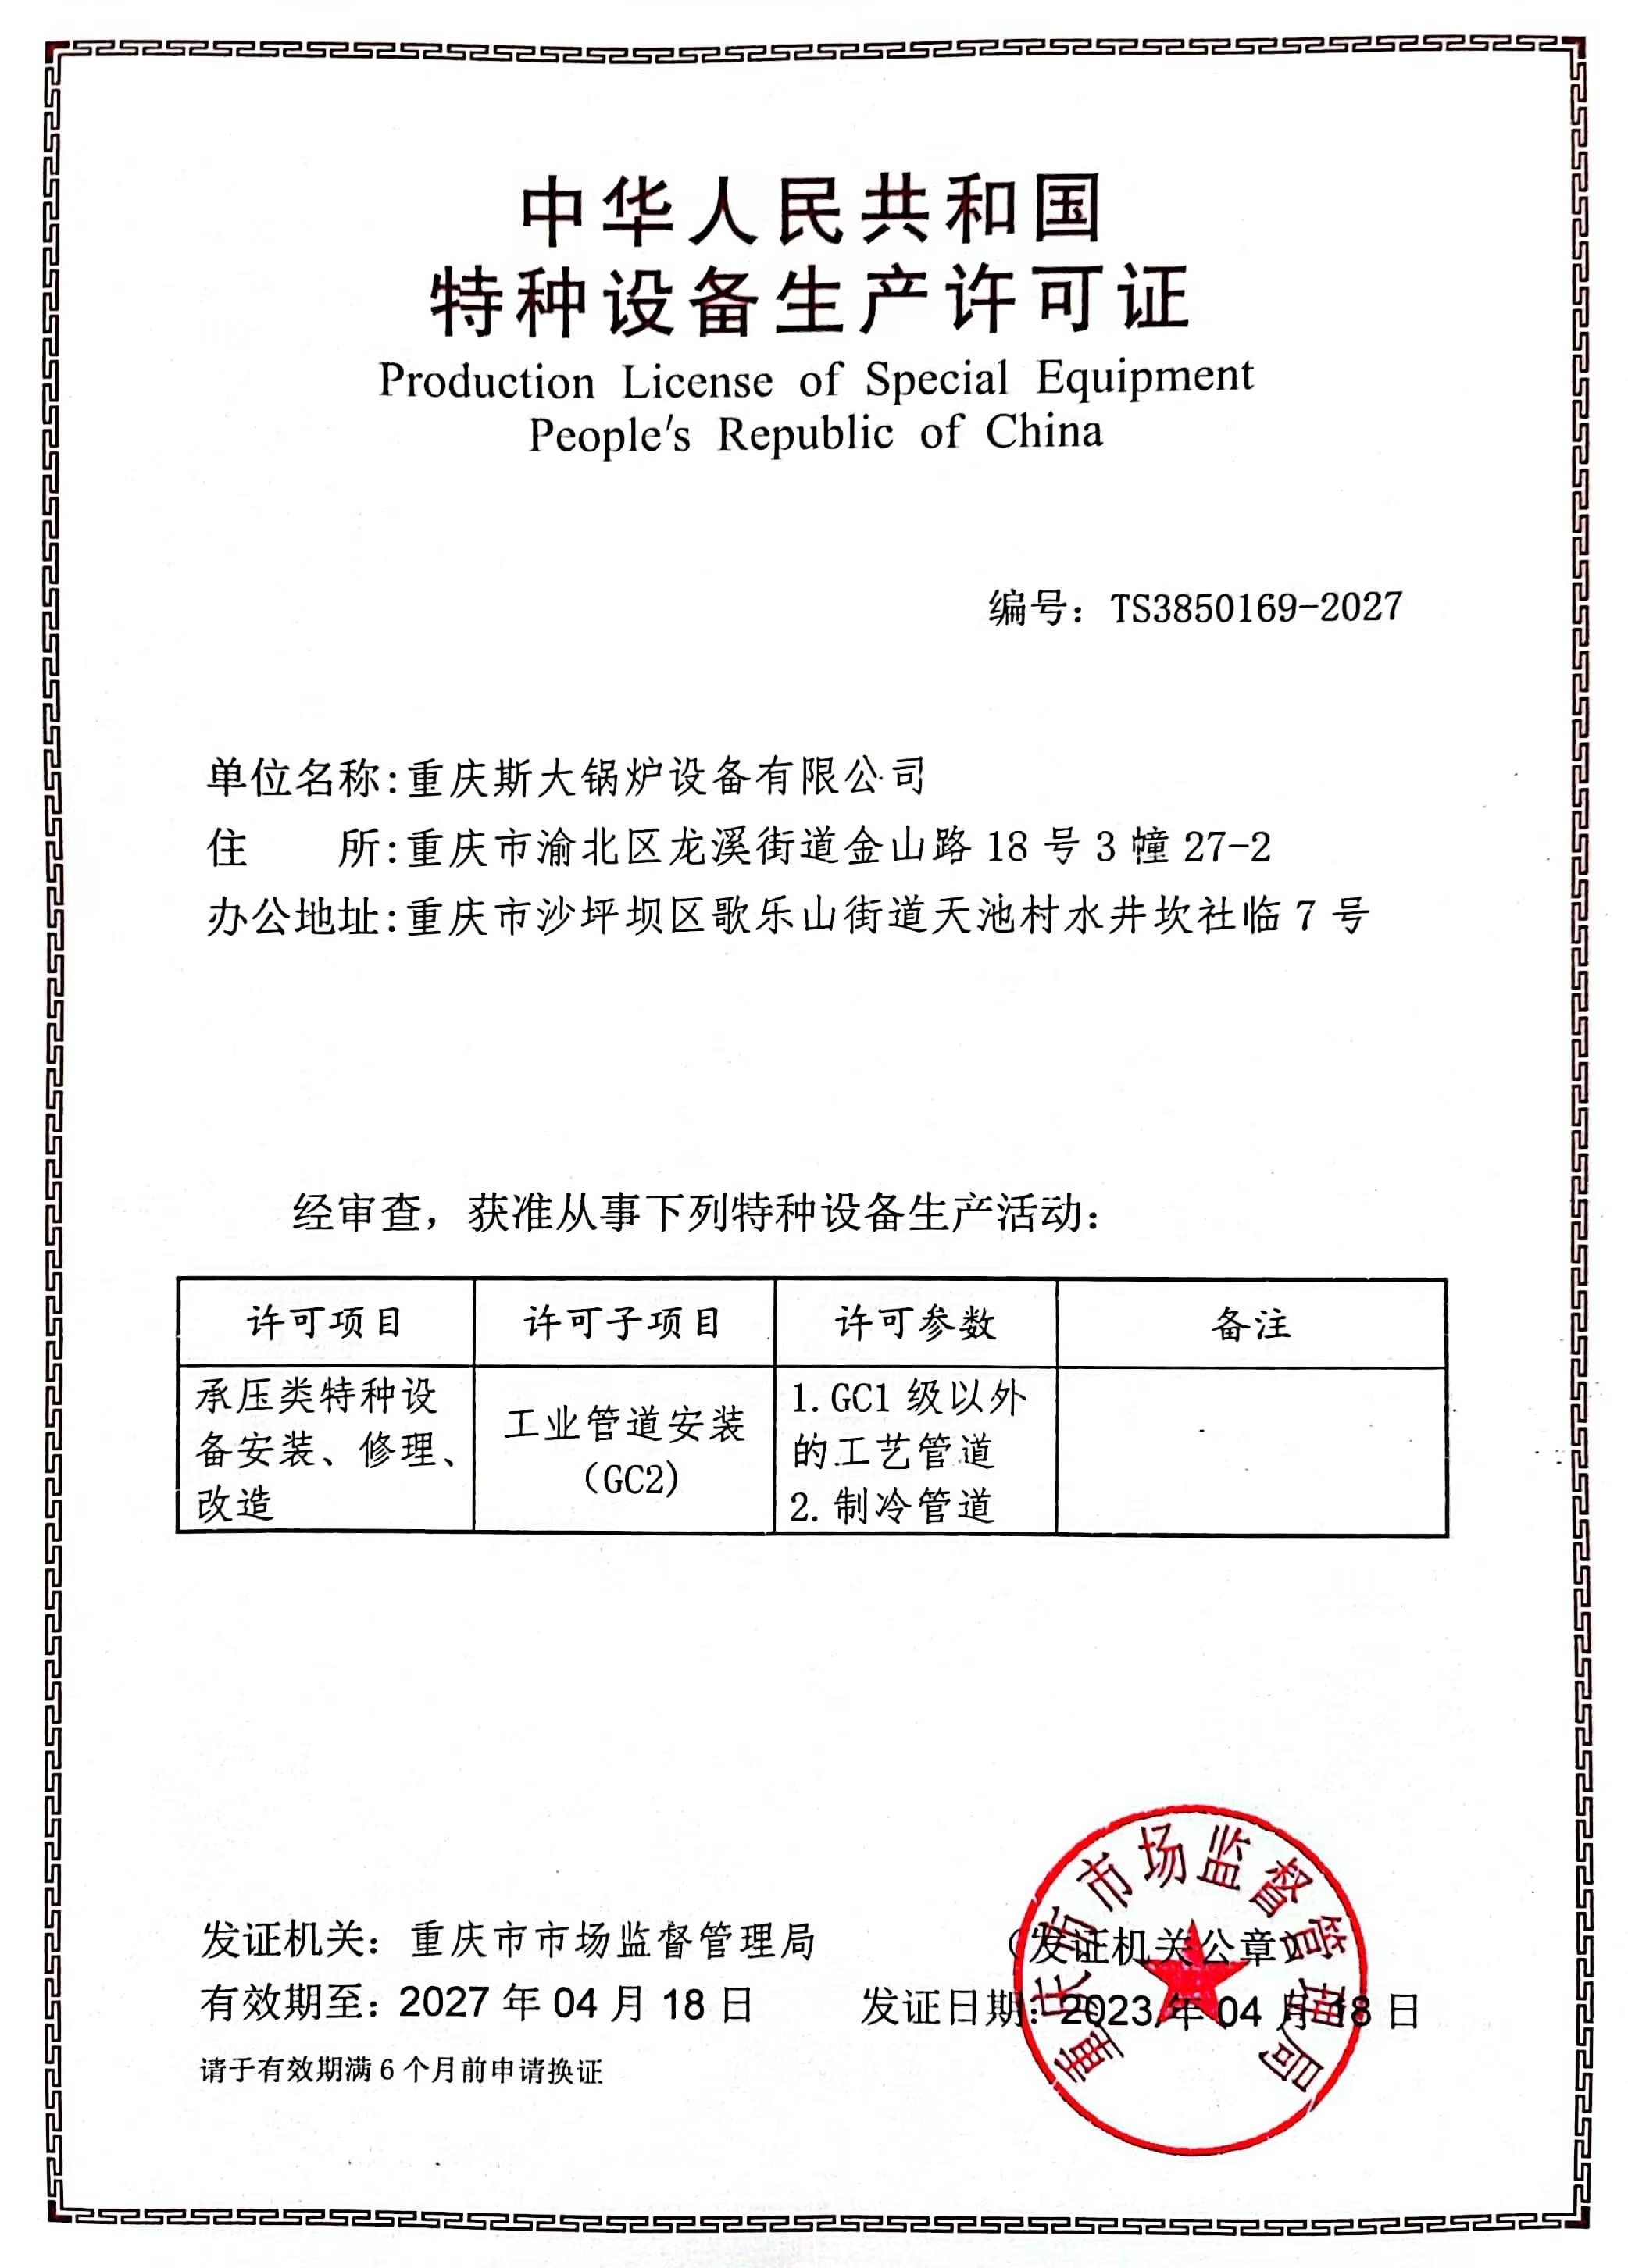 重庆斯大锅炉设备有限公司工业管道安装许可证